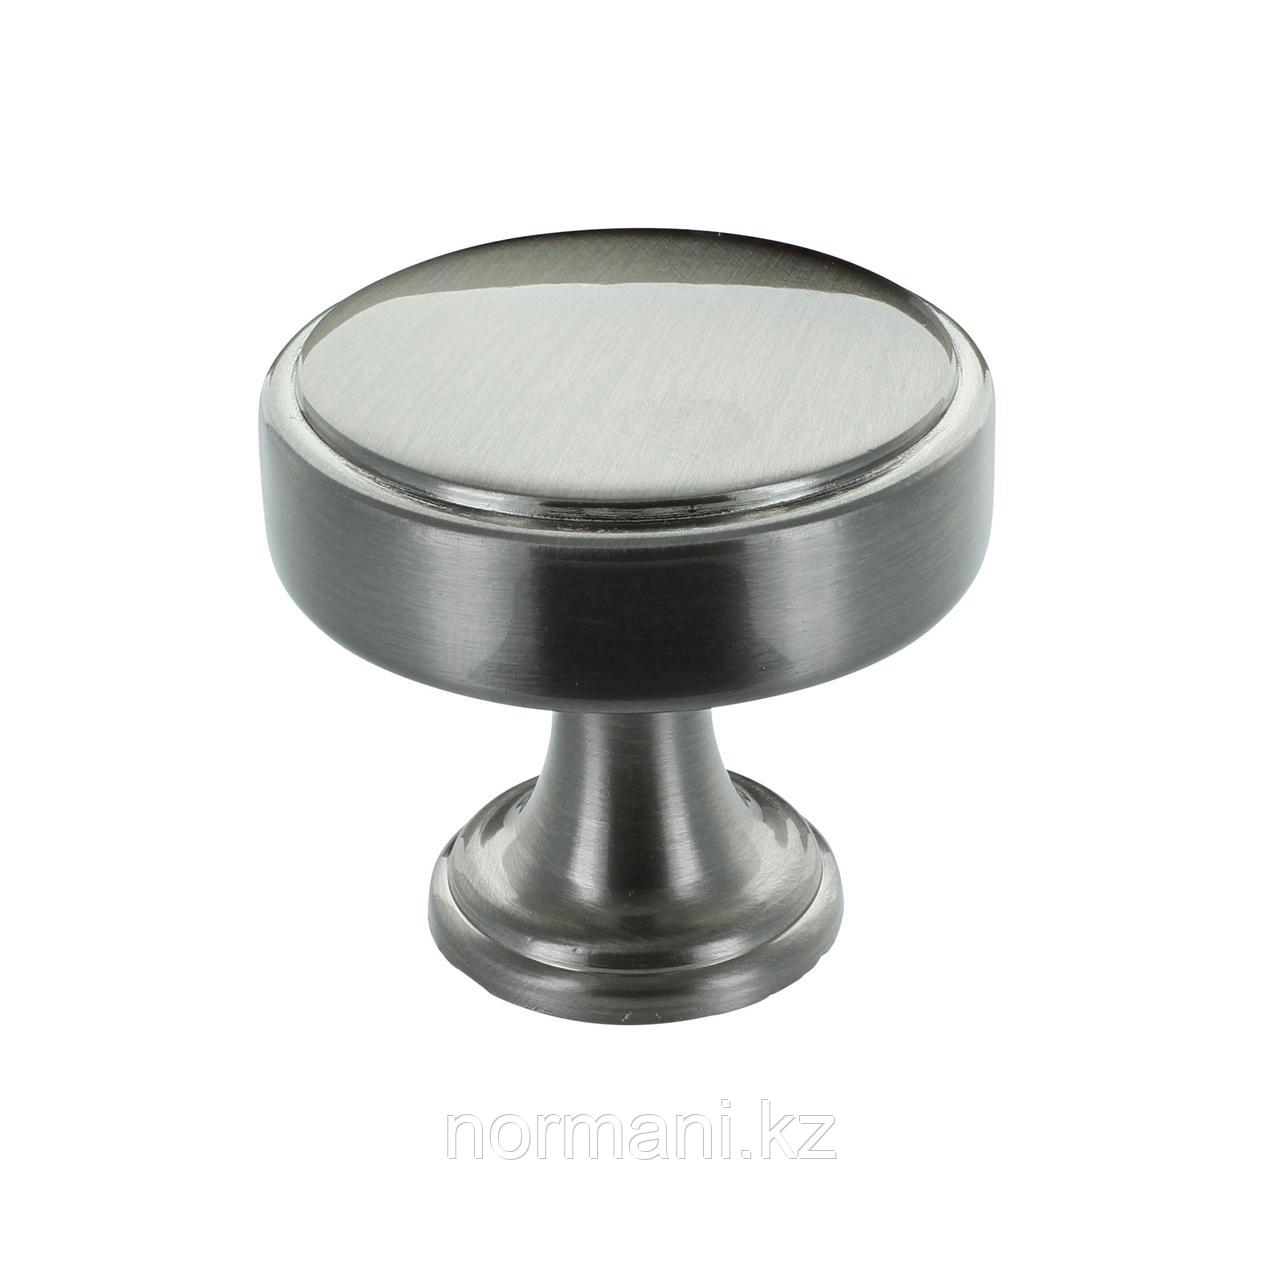 Ручка кнопка диаметр 35мм, отделка сталь шлифованная, фото 1